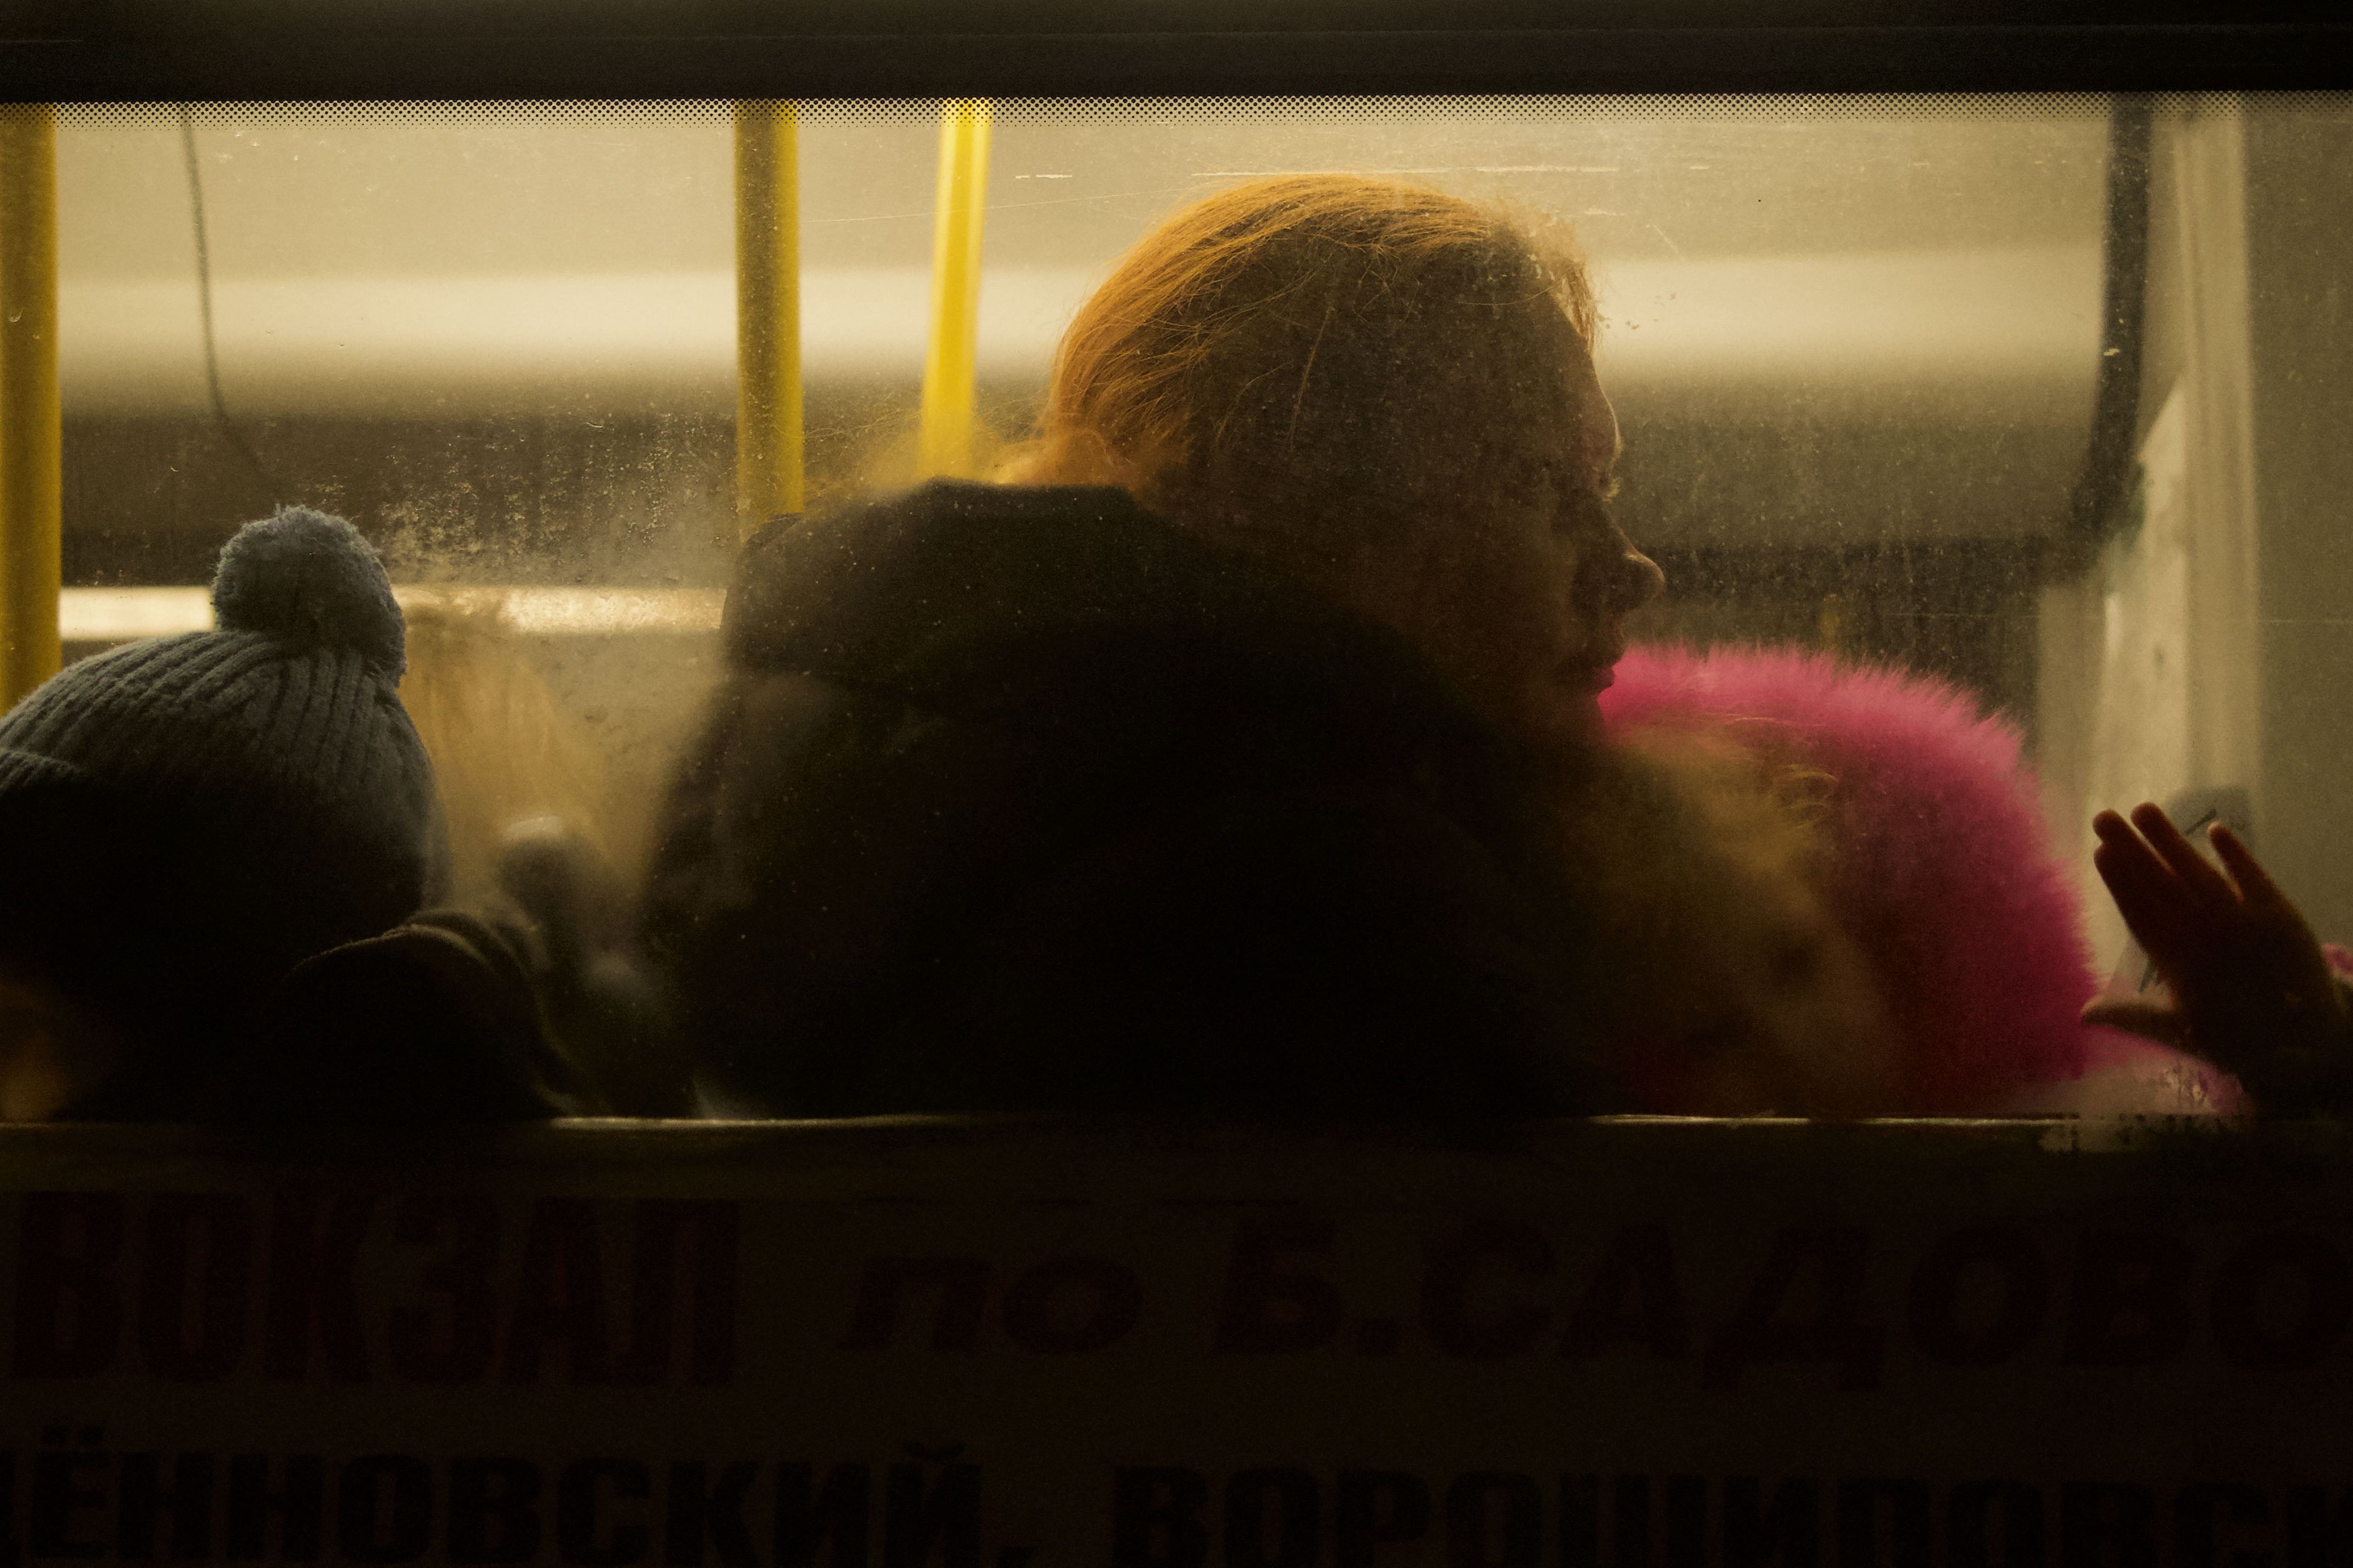 烏克蘭平民擠在巴士上，從「頓涅茨克人民共和國」被轉移到俄羅斯塔甘羅格（Taganrog），2022年2月。